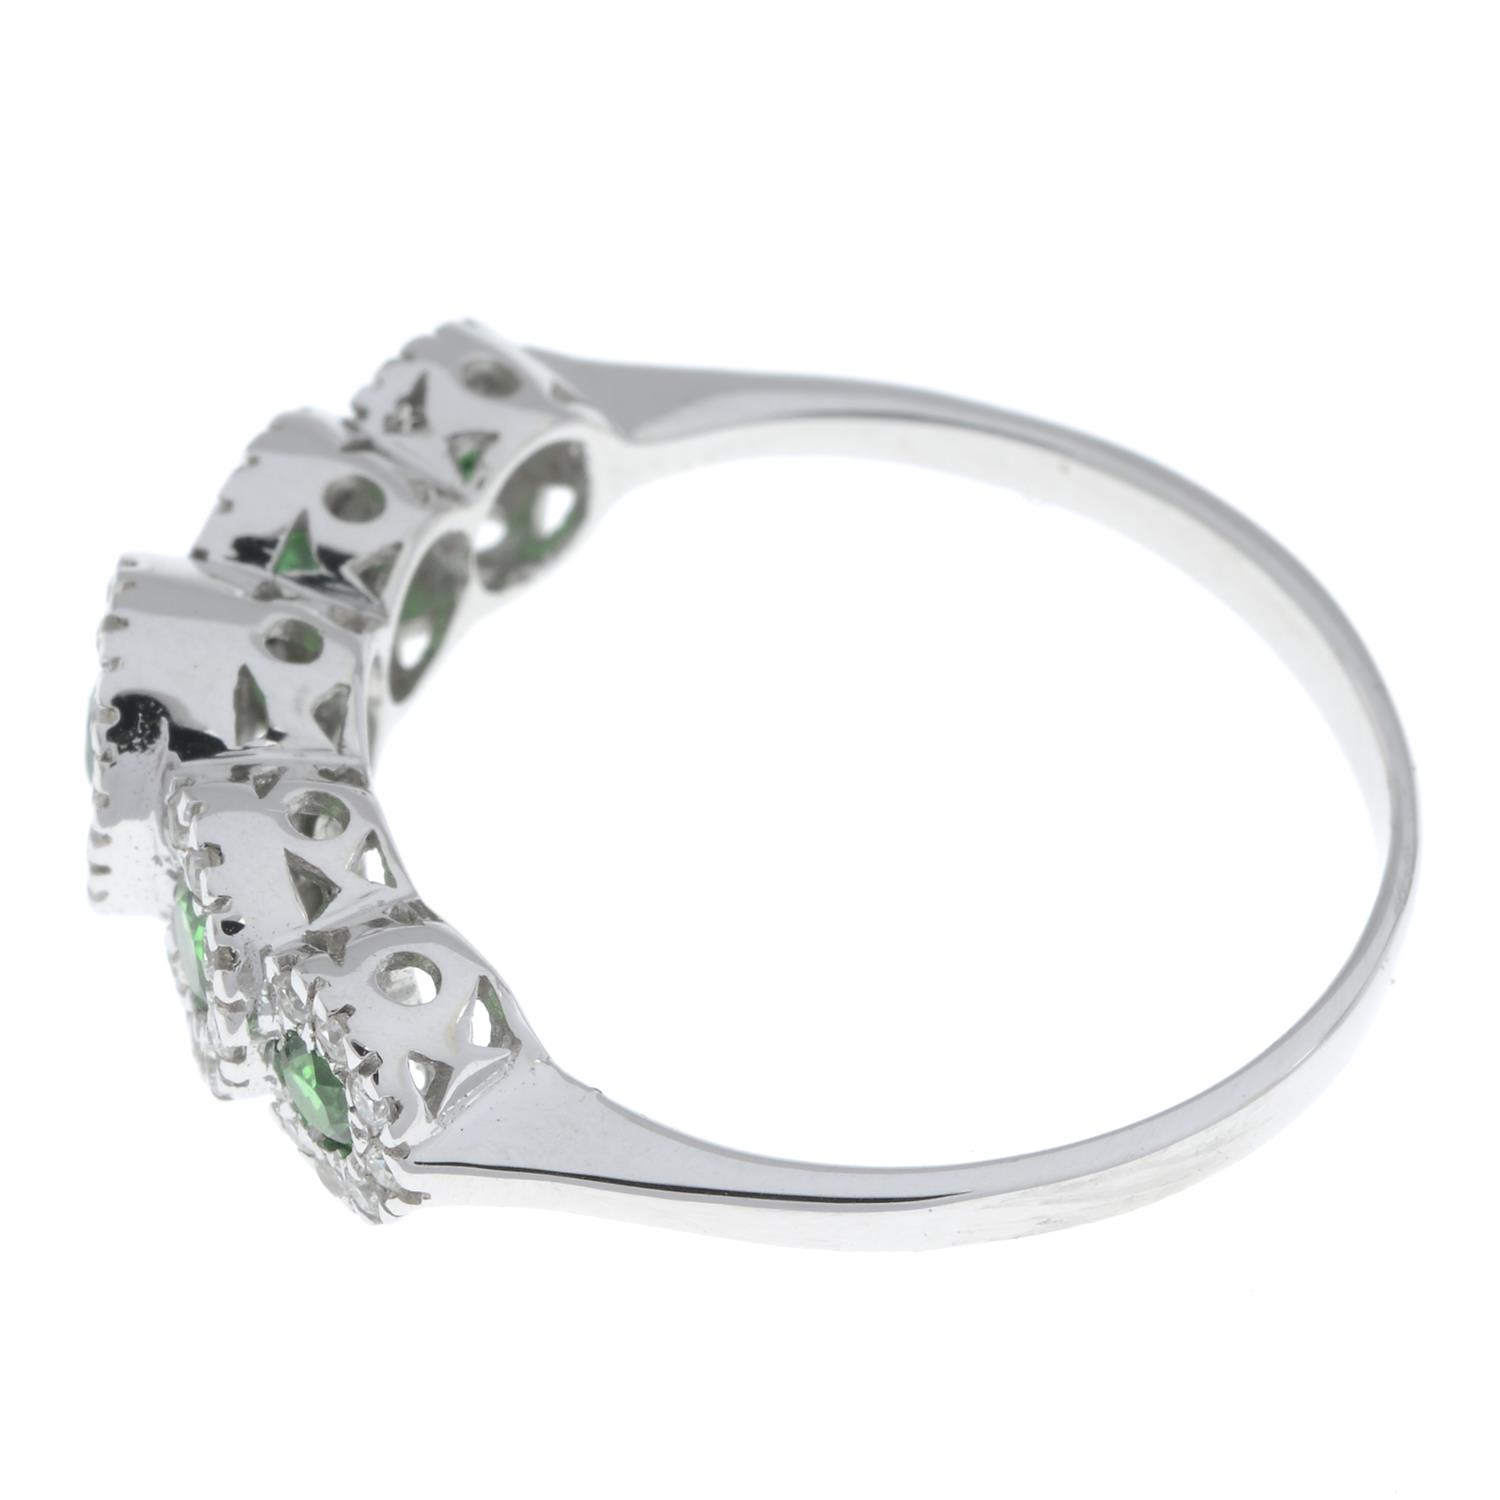 Tsavorite garnet and diamond ring - Image 4 of 5